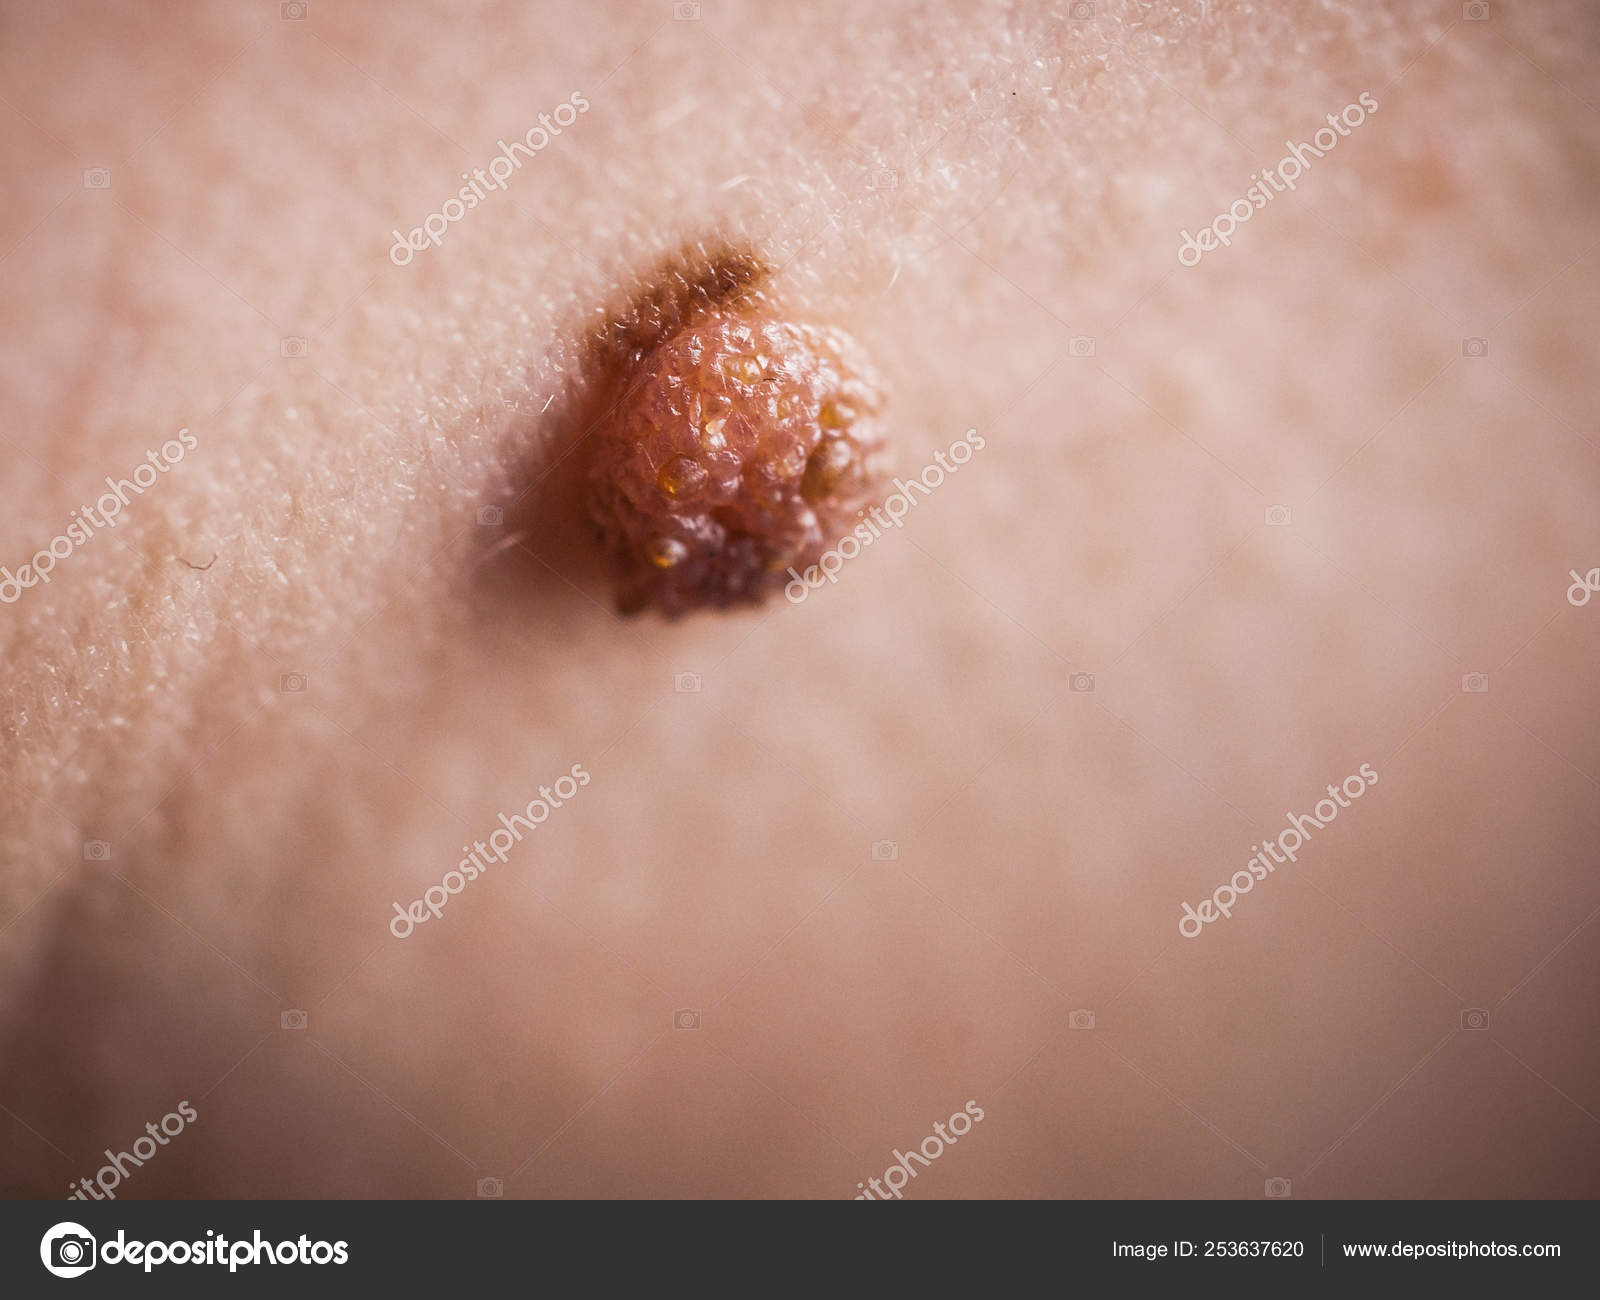 papiloma adalah tumor jinak kulit